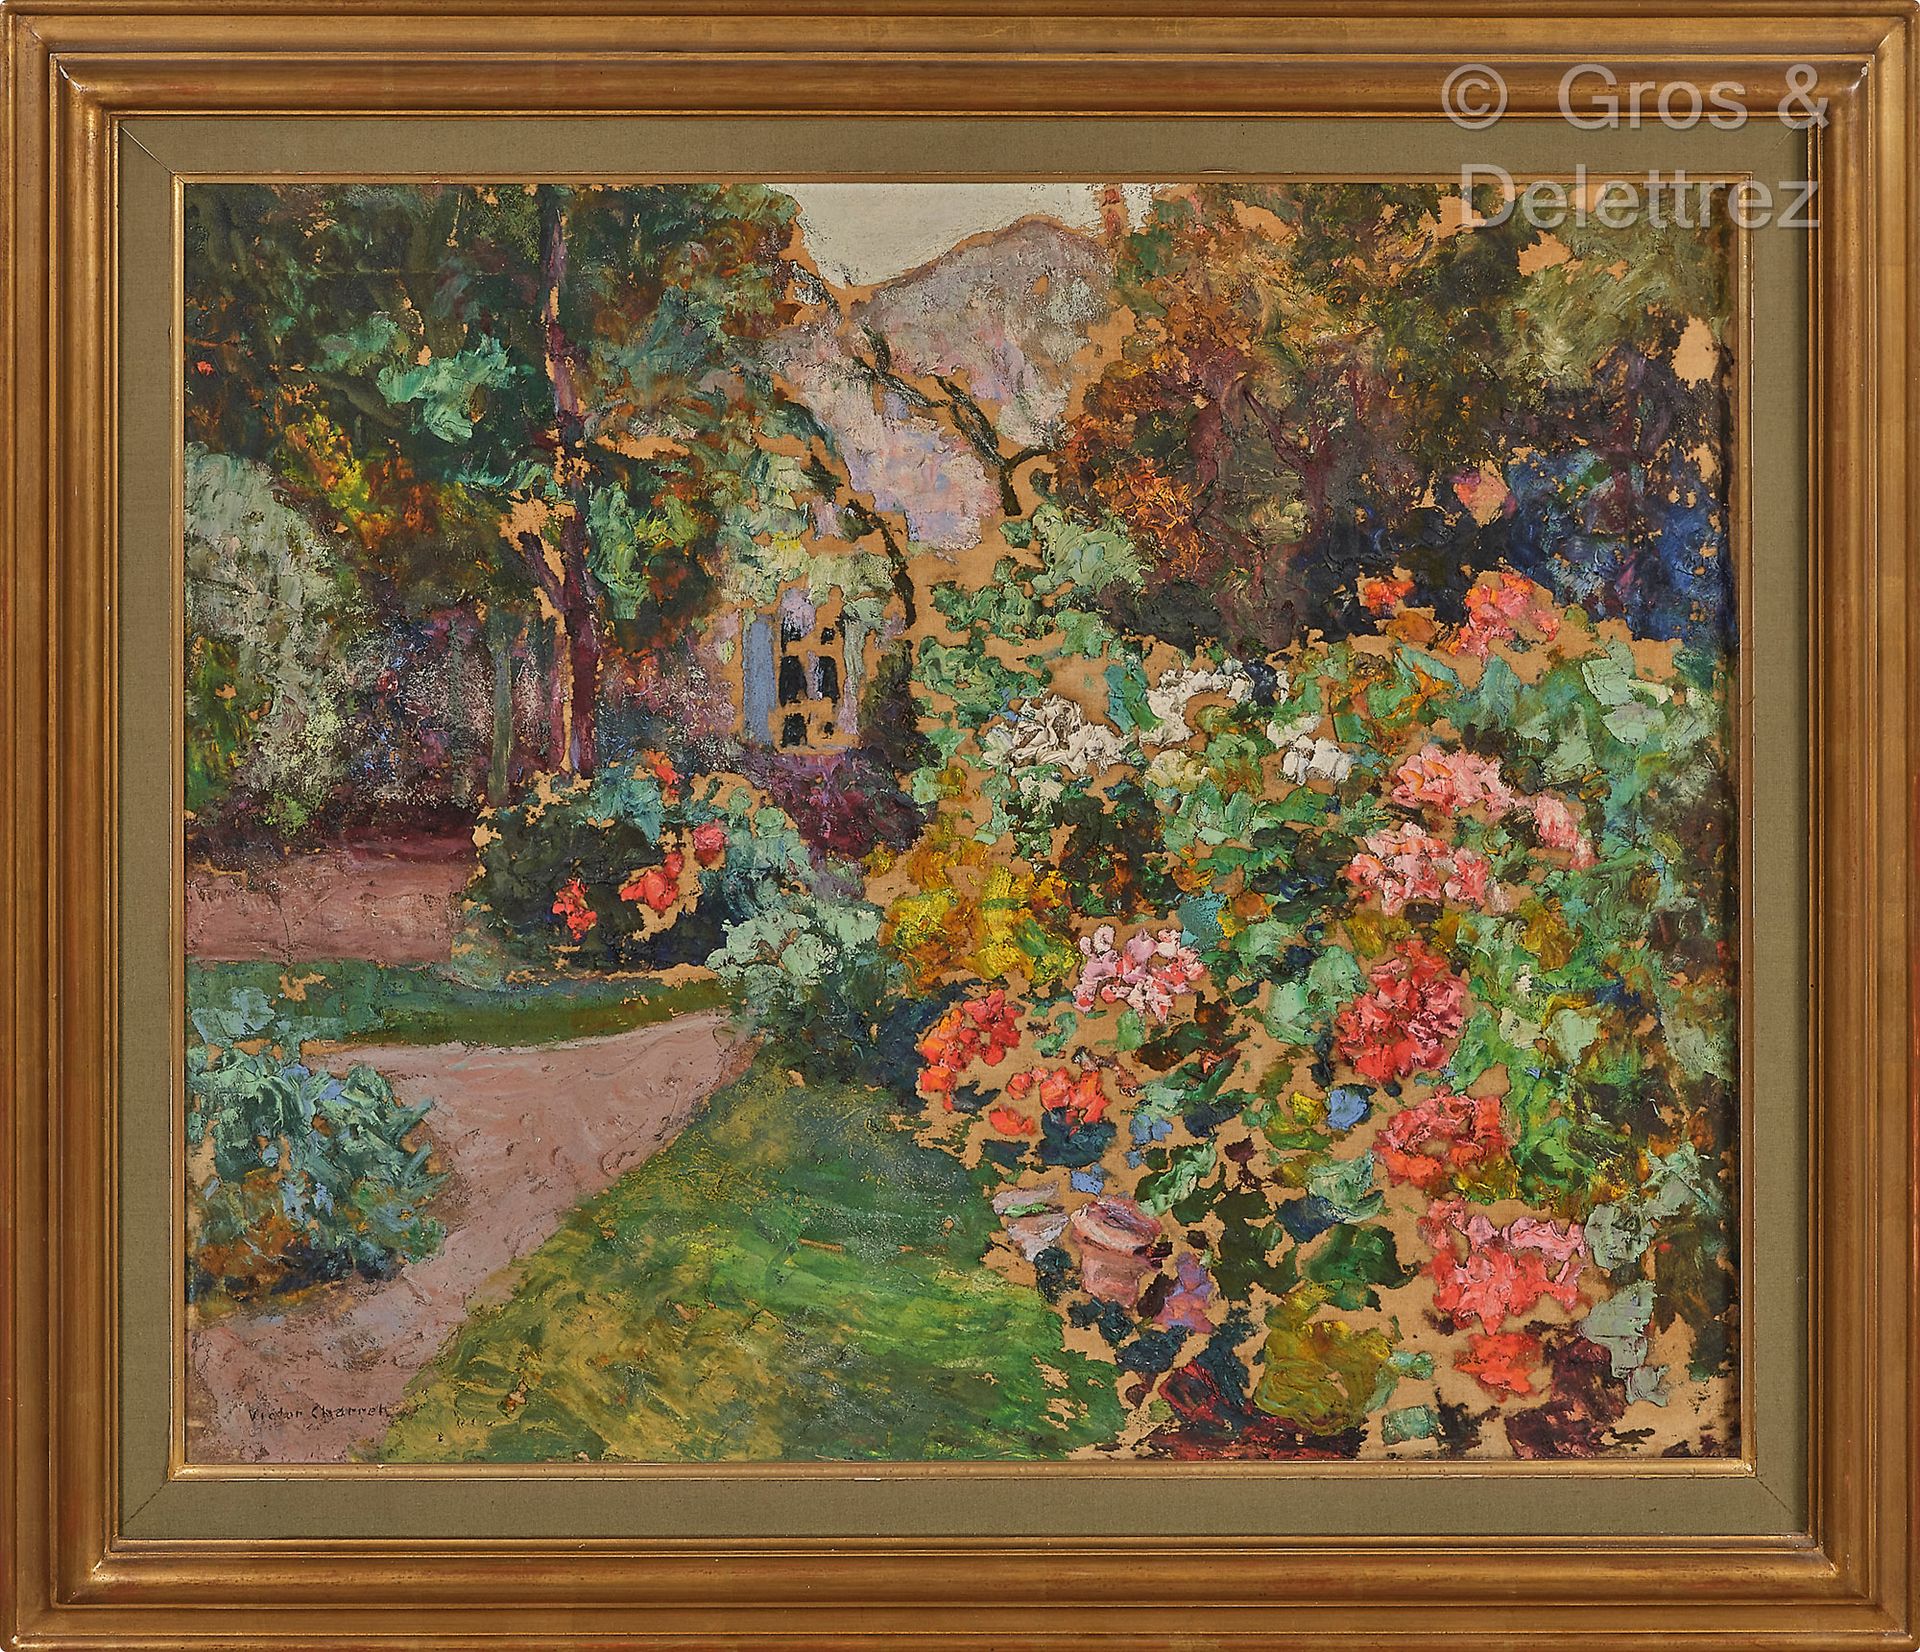 Victor CHARRETON (1864-1936) Arboleda de flores delante de la casa, hacia 1936

&hellip;